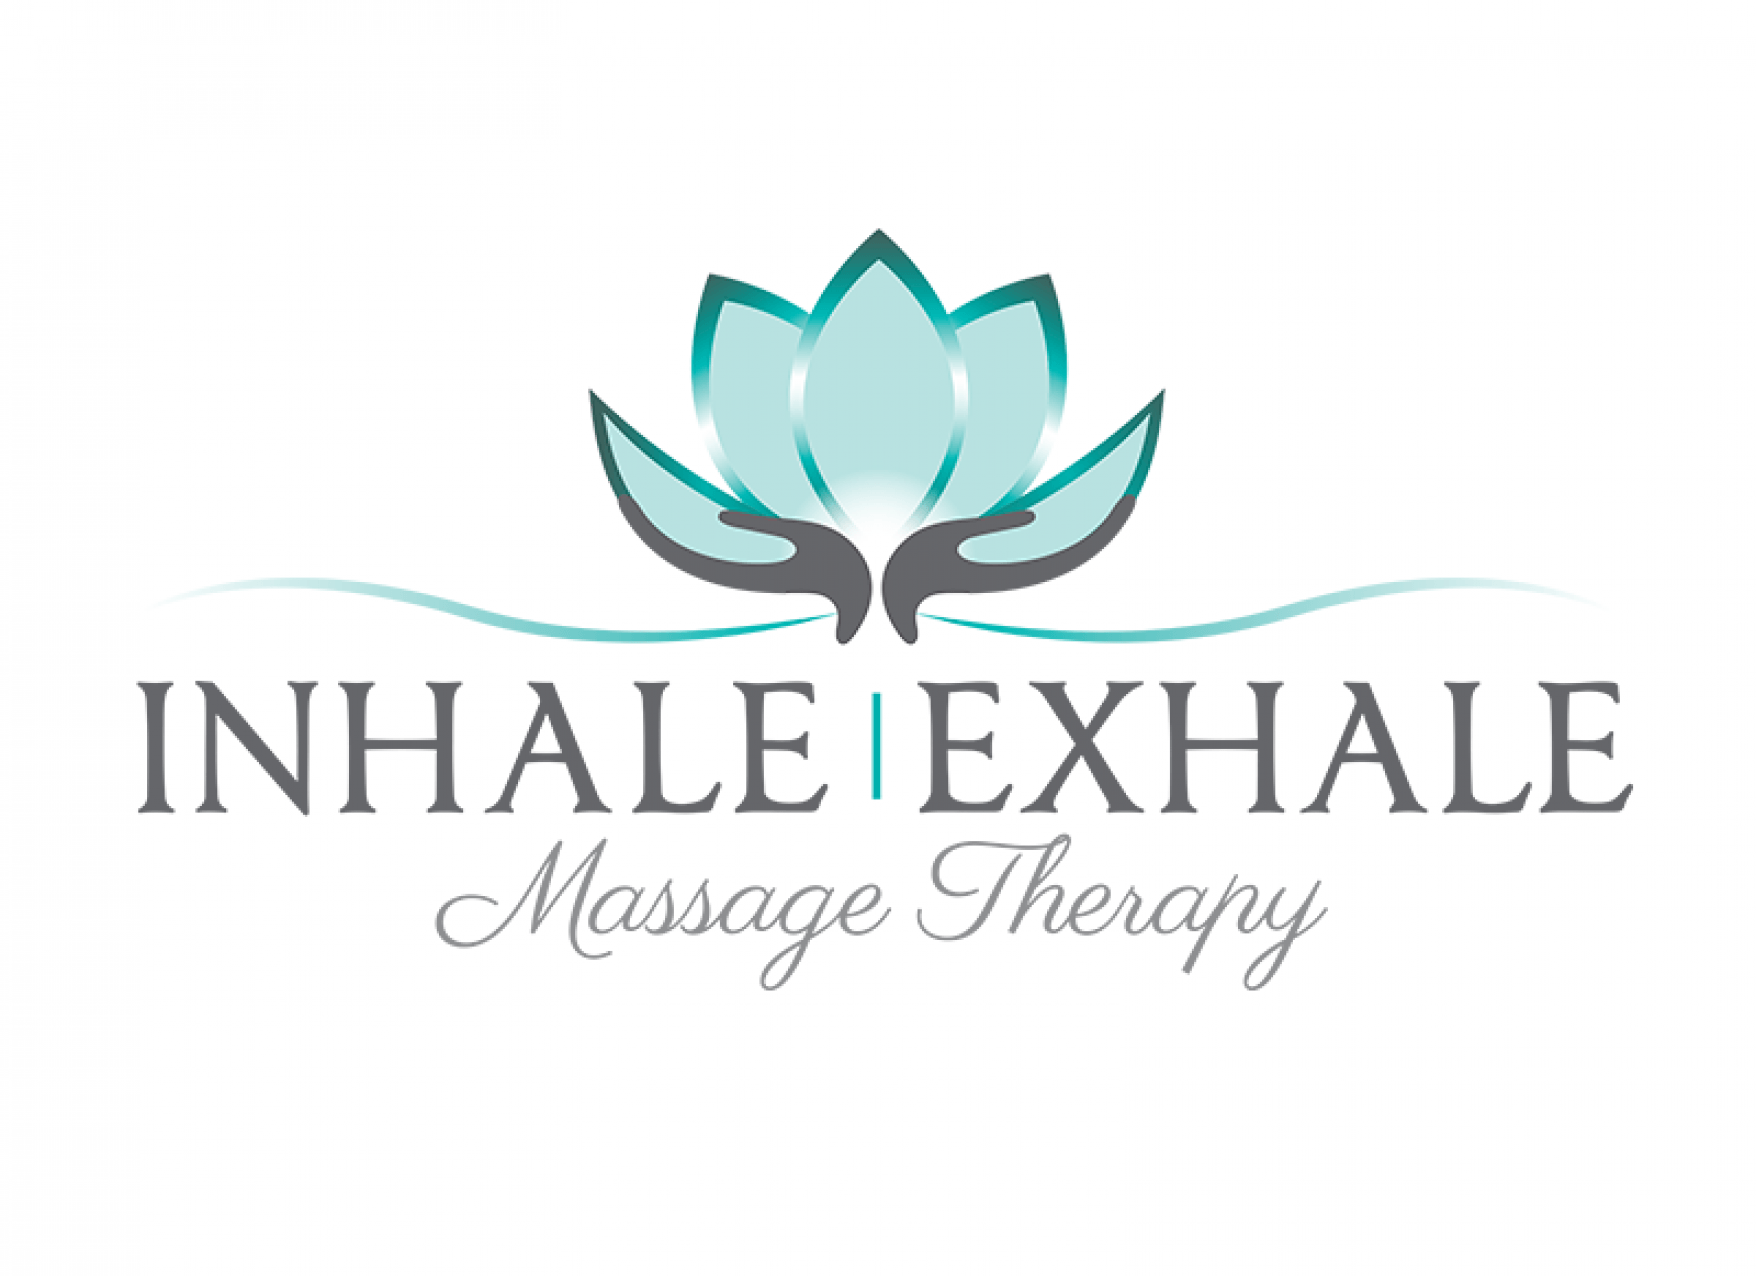 Inhale Logo - Inhale Exhale Massage Therapy logo Designs, LLC